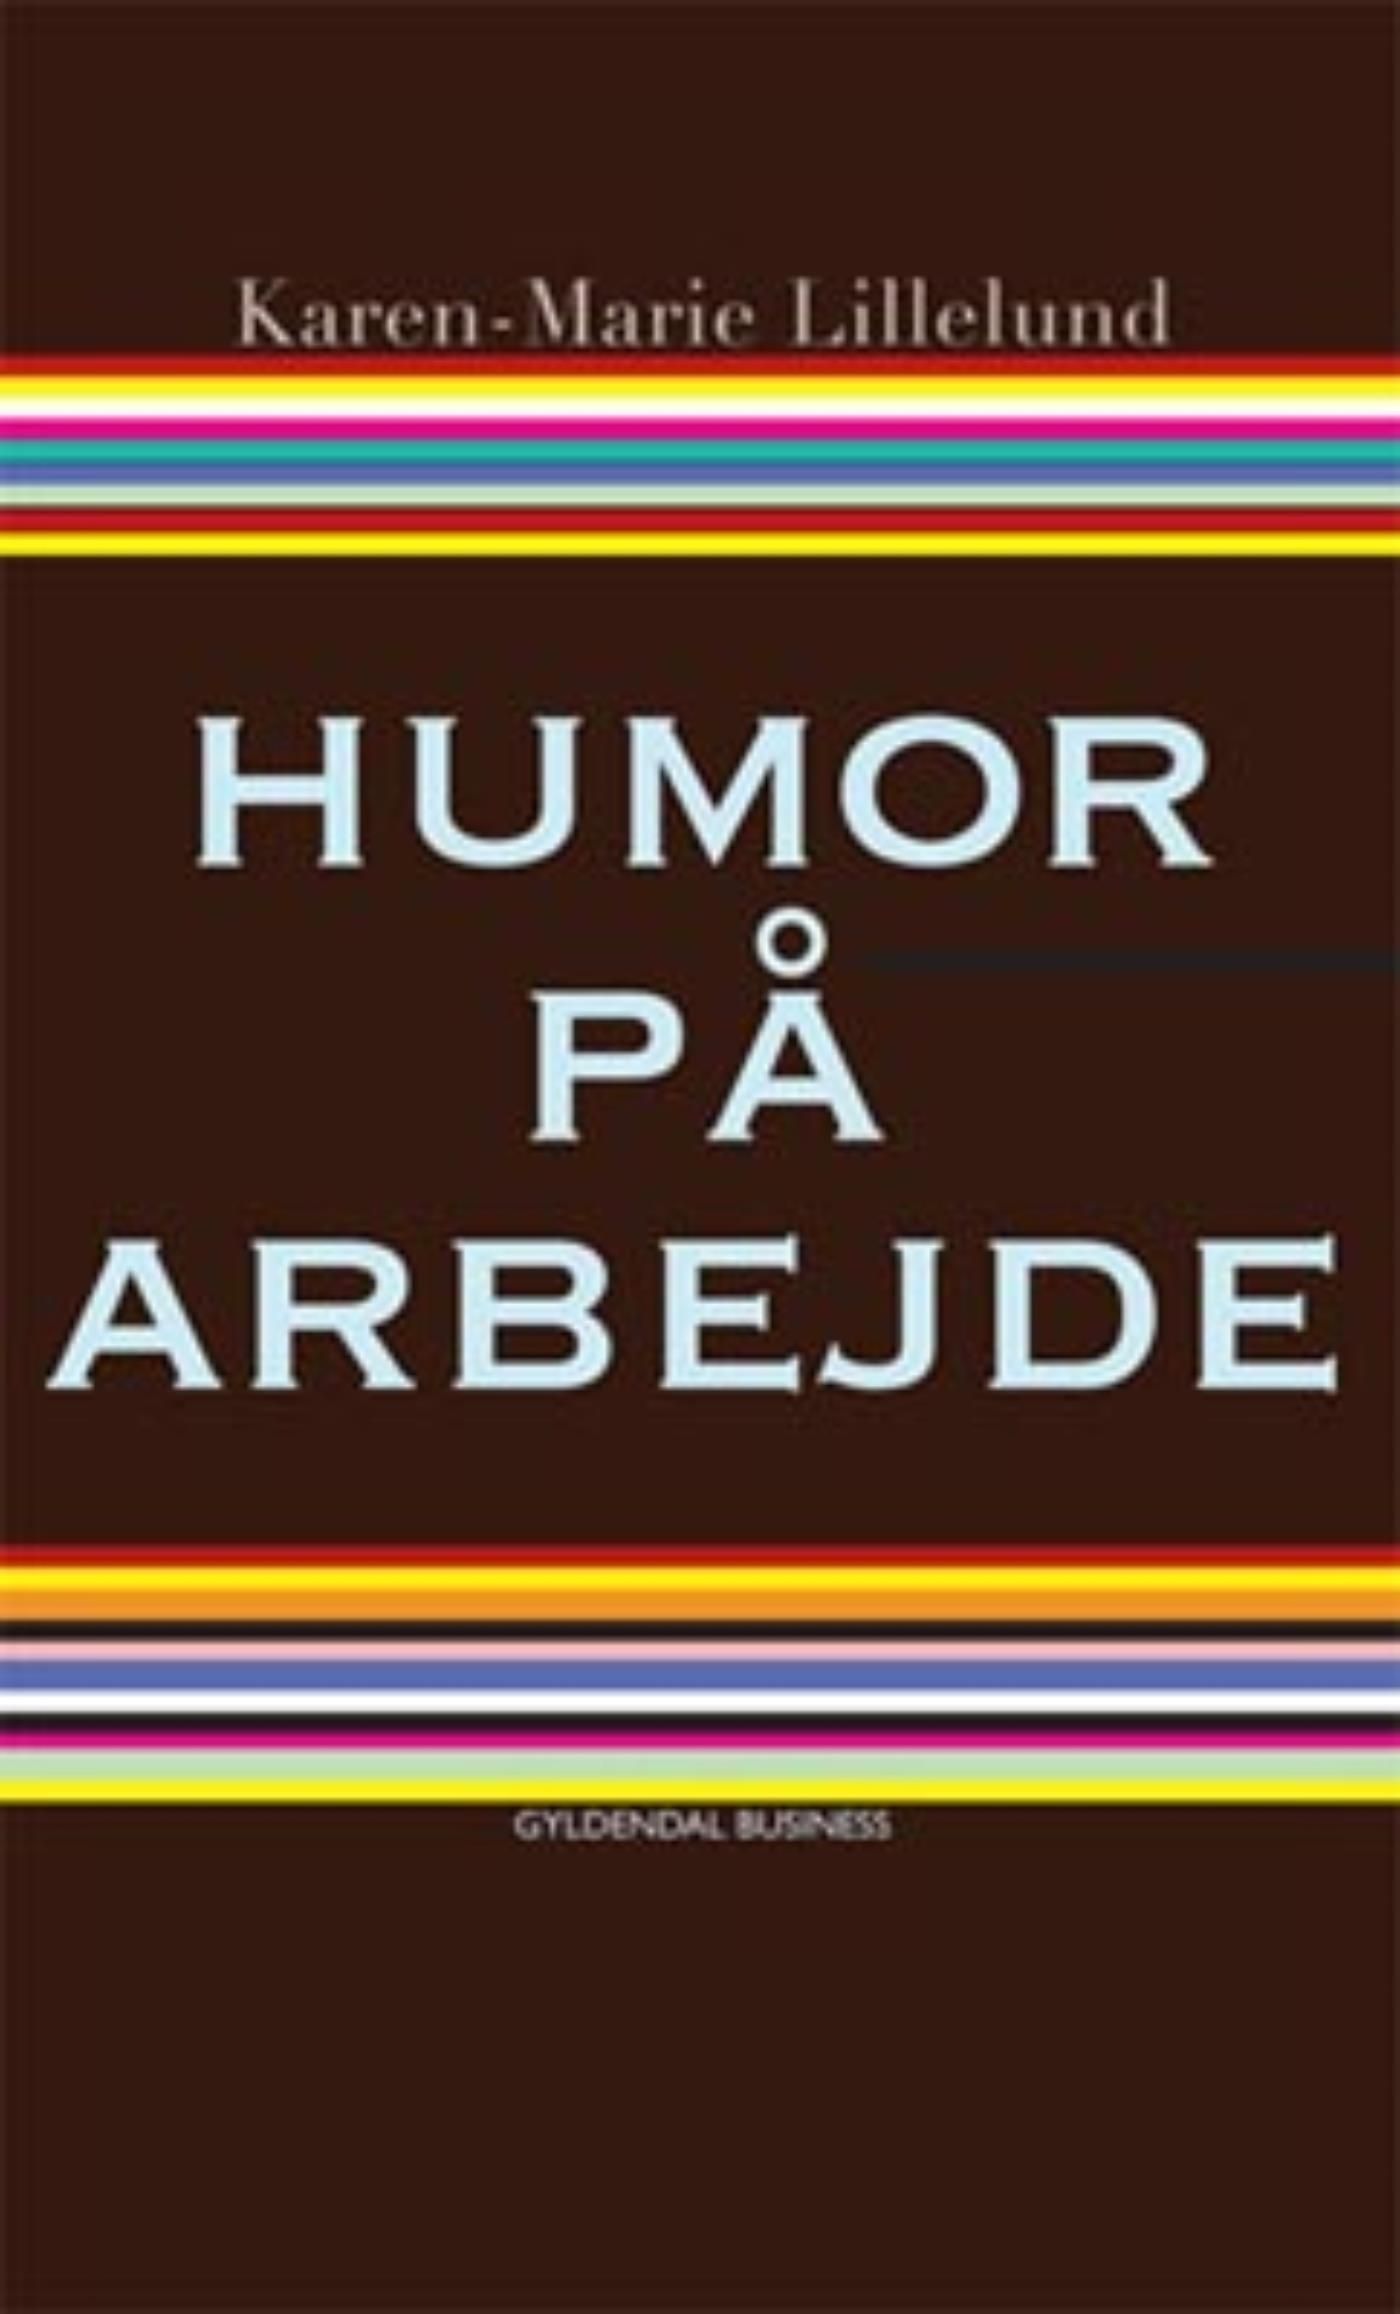 Humor på arbejde, eBook by Karen-Marie Lillelund